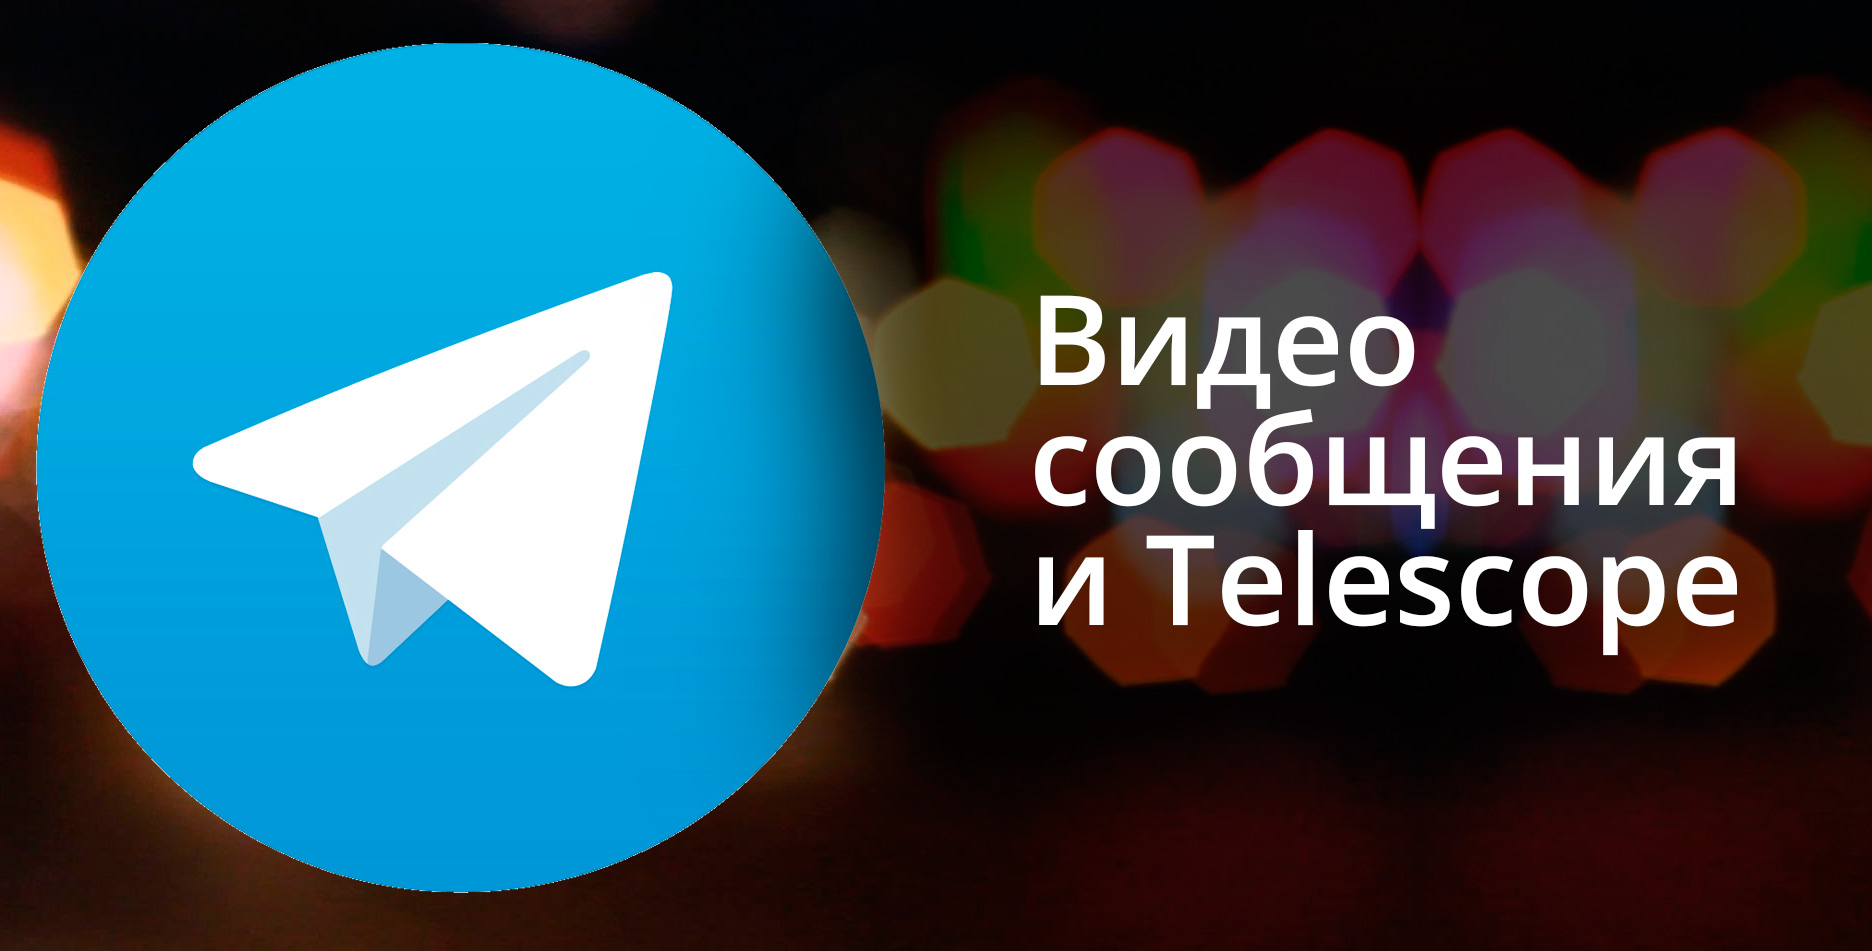 Как отправить видеосообщение в Telegram?